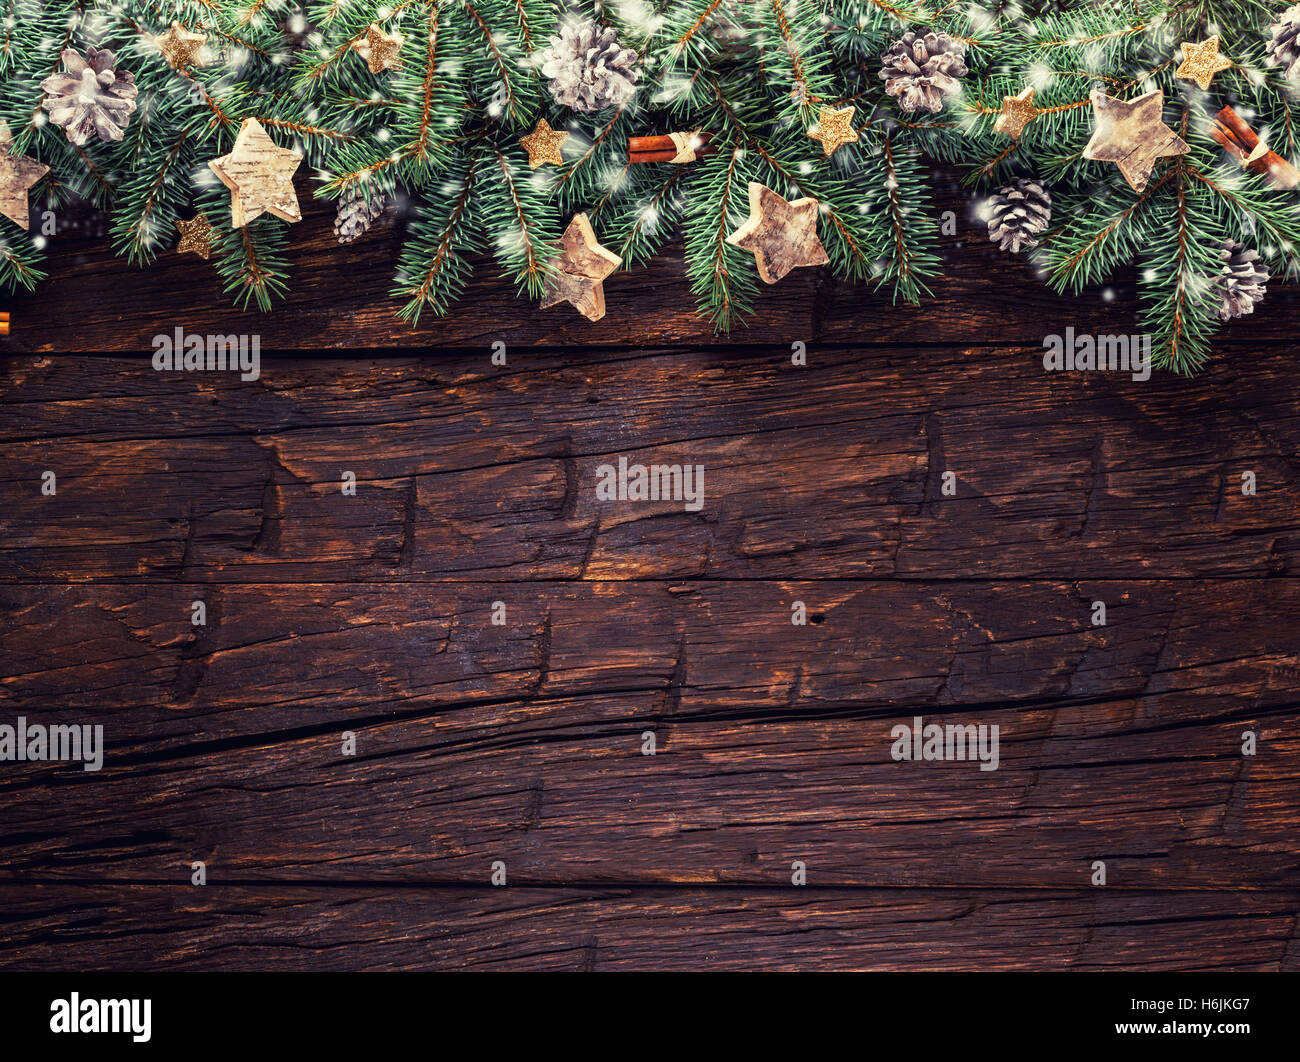 Decorazioni Natalizie Con Rami Di Abete.Decorazione Di Natale Con Rami Di Abete Posto Su Vecchie Tavole Di Legno Foto Stock Alamy